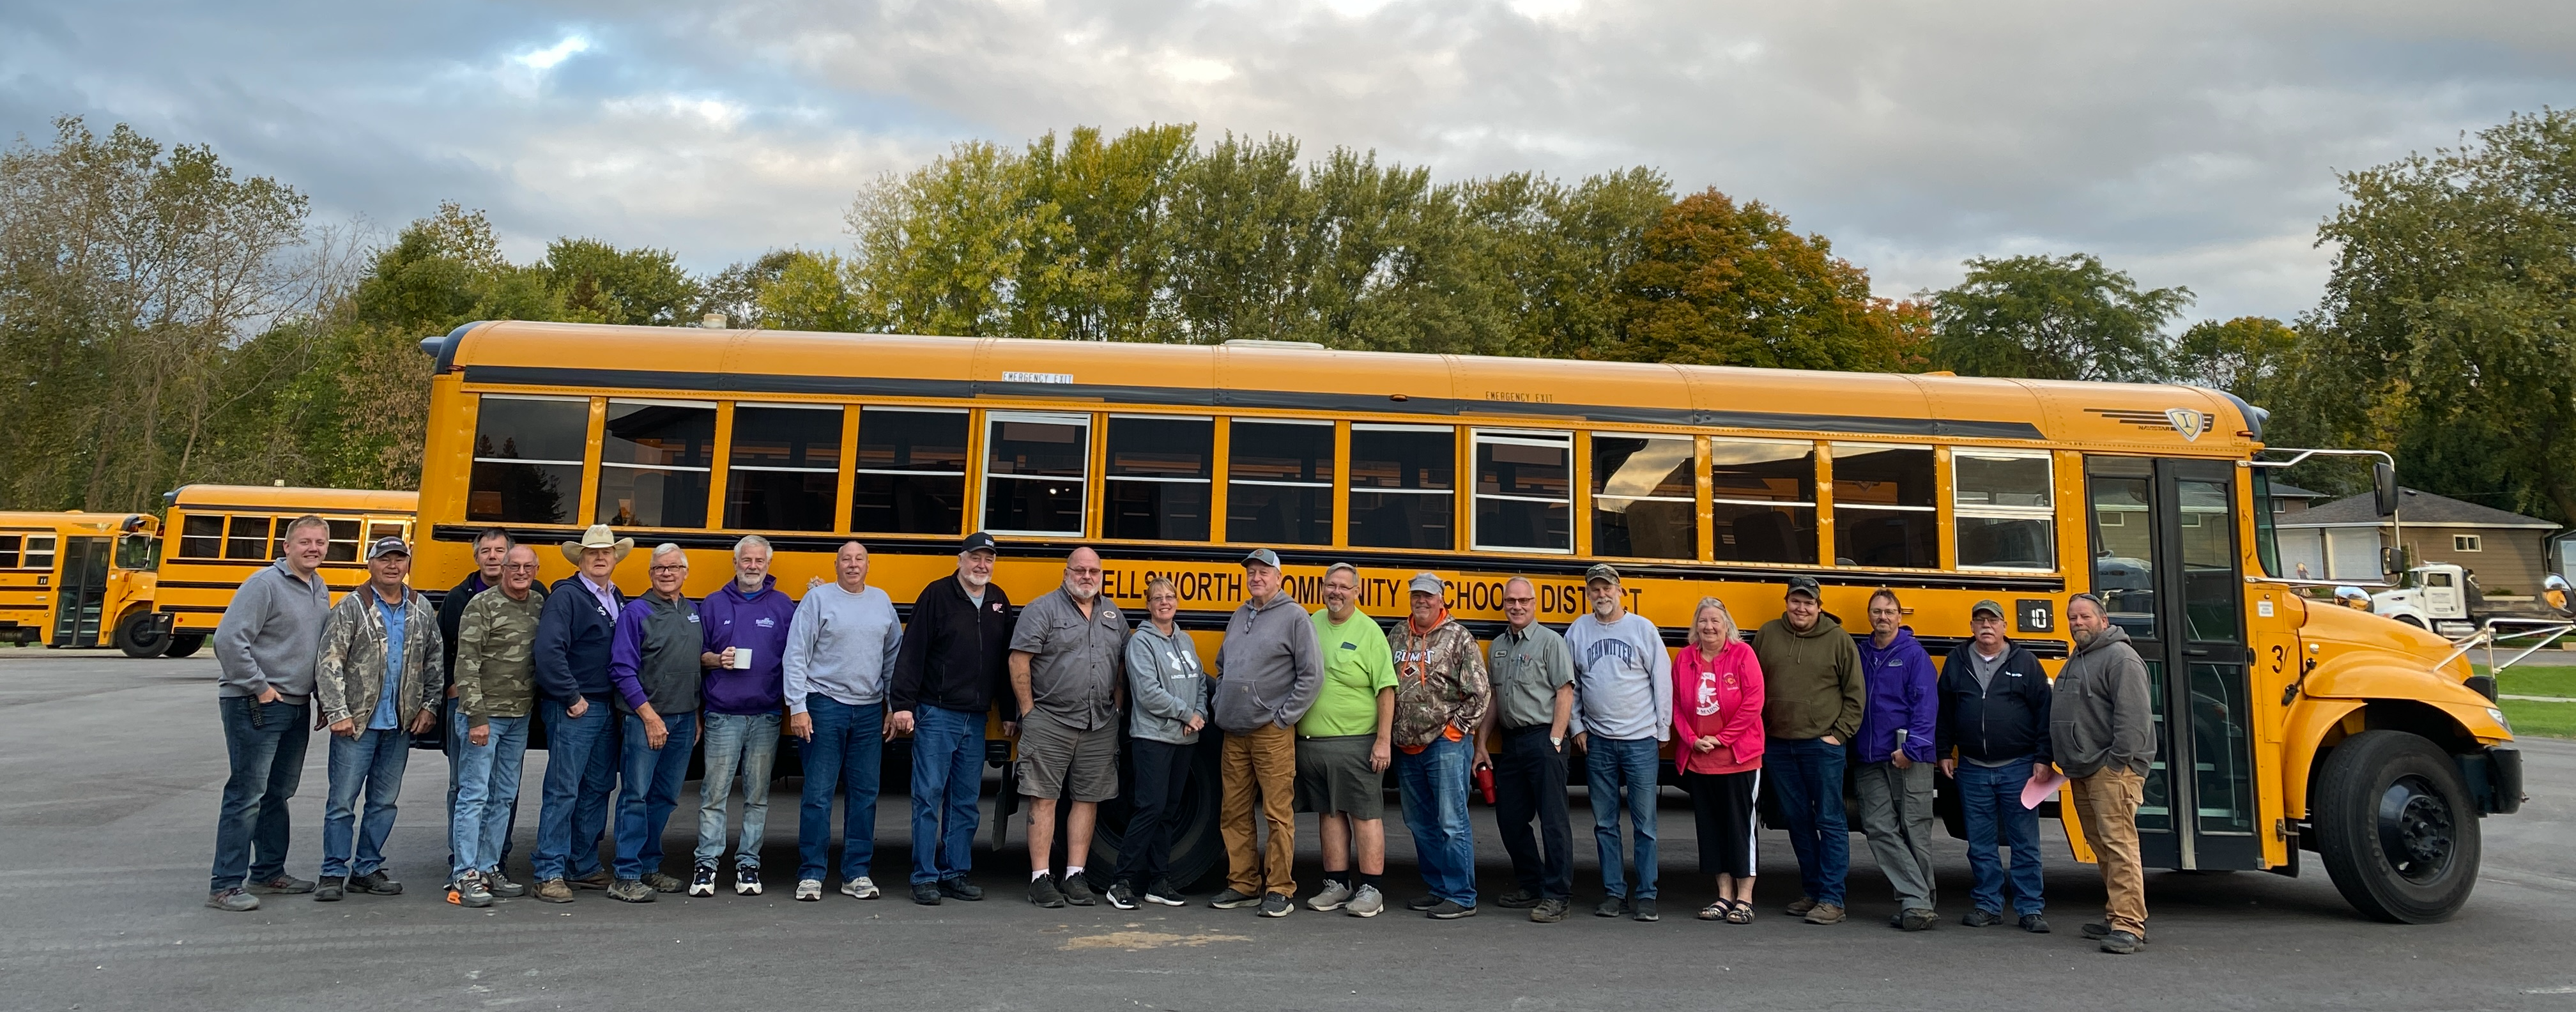 school bus stock image